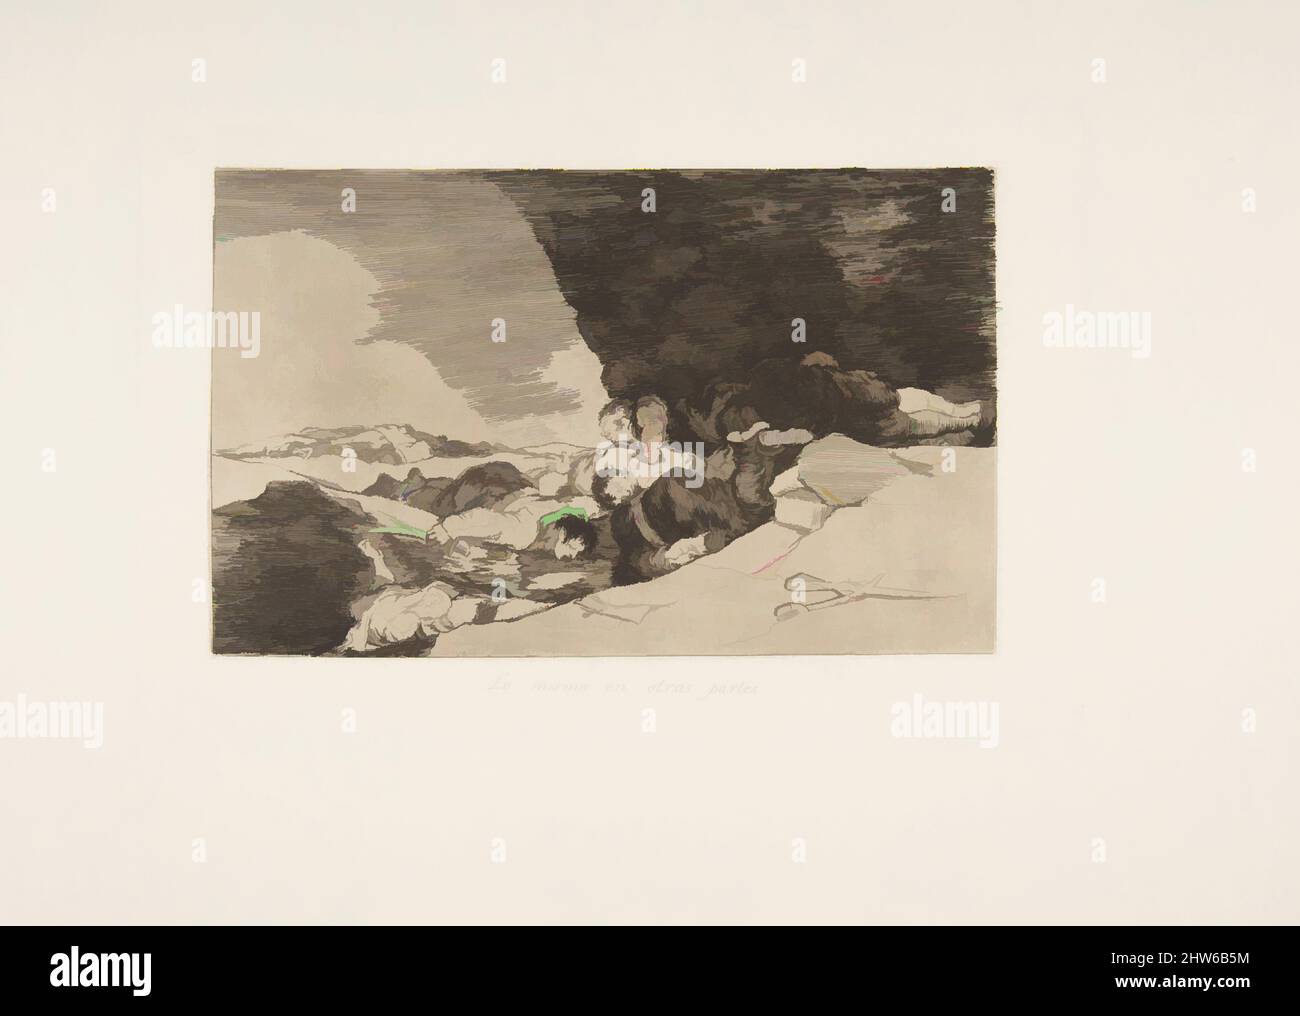 Art inspiré par la planche 23 de 'les désastres de la guerre' (Los Desastres de la Guerra): 'La même ailleurs' (Lo mismo en otras parties), 1810 (publié en 1863), Etching, Drypoint, lavis et burin, Plaque : 6 5/16 × 9 7/16 po (16 × 24 cm), Prints, Goya (Francisco de Goya y Lucientes) (espagnol, oeuvres classiques modernisées par Artotop avec une touche de modernité. Formes, couleur et valeur, impact visuel accrocheur sur l'art émotions par la liberté d'œuvres d'art d'une manière contemporaine. Un message intemporel qui cherche une nouvelle direction créative. Artistes qui se tournent vers le support numérique et créent le NFT Artotop Banque D'Images